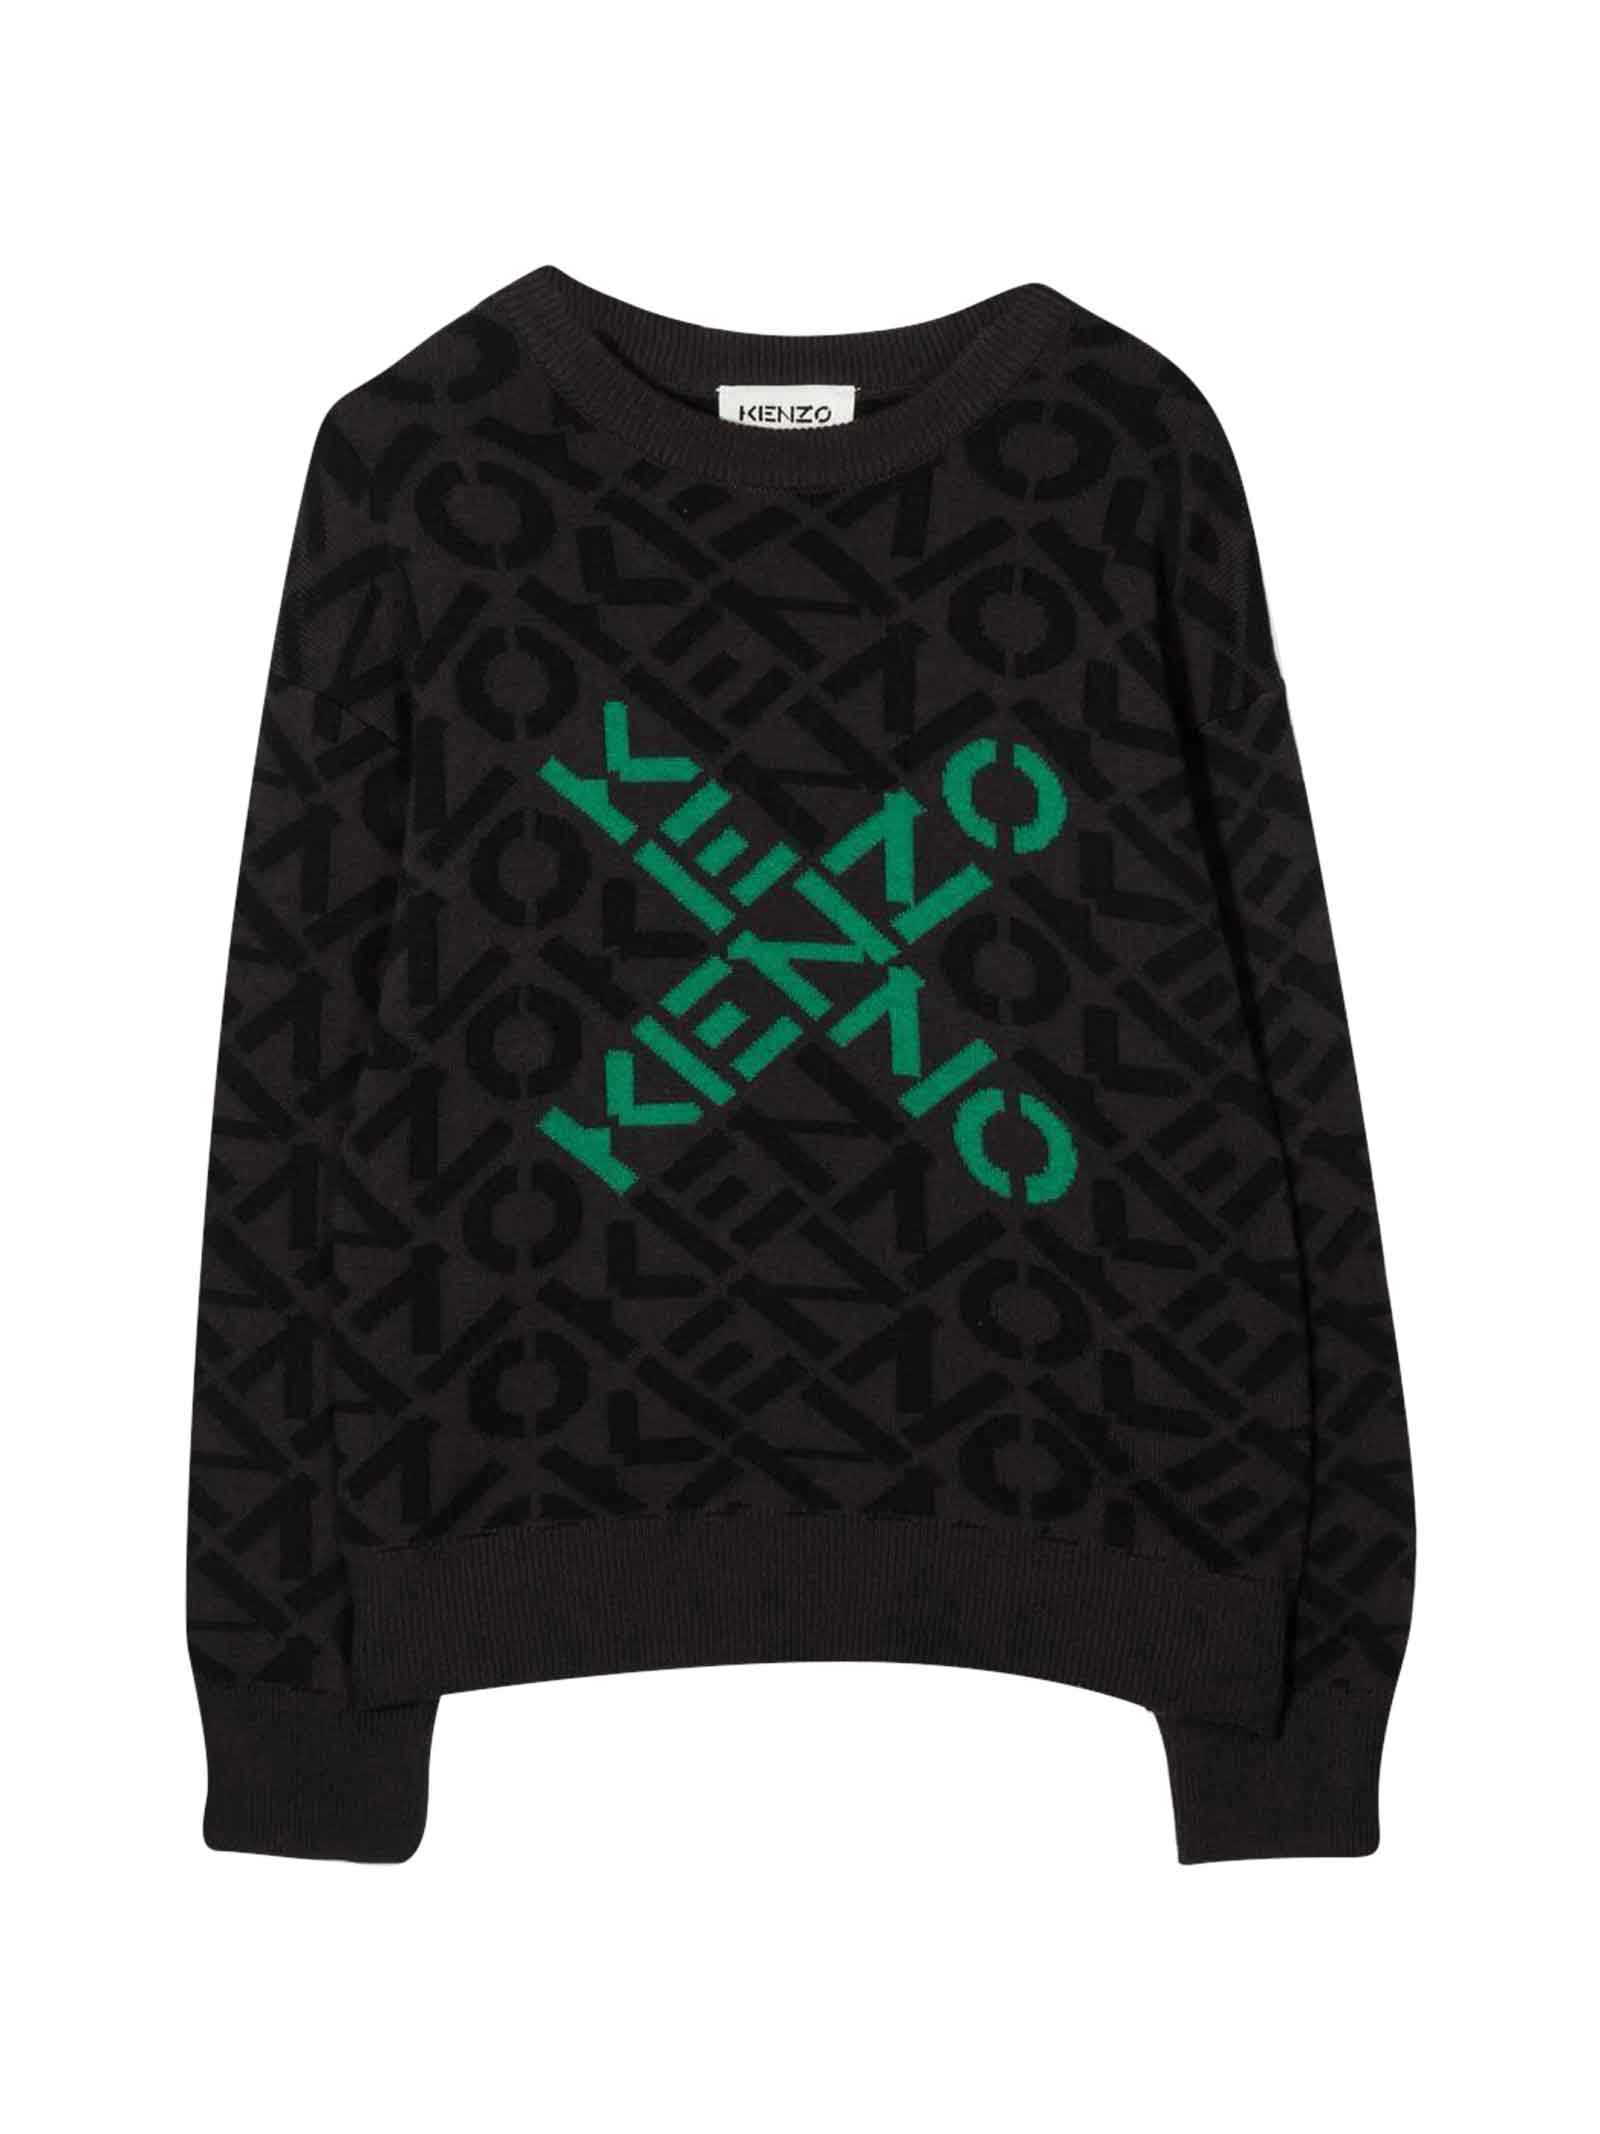 Kenzo Kids Gray Sweater Unisex